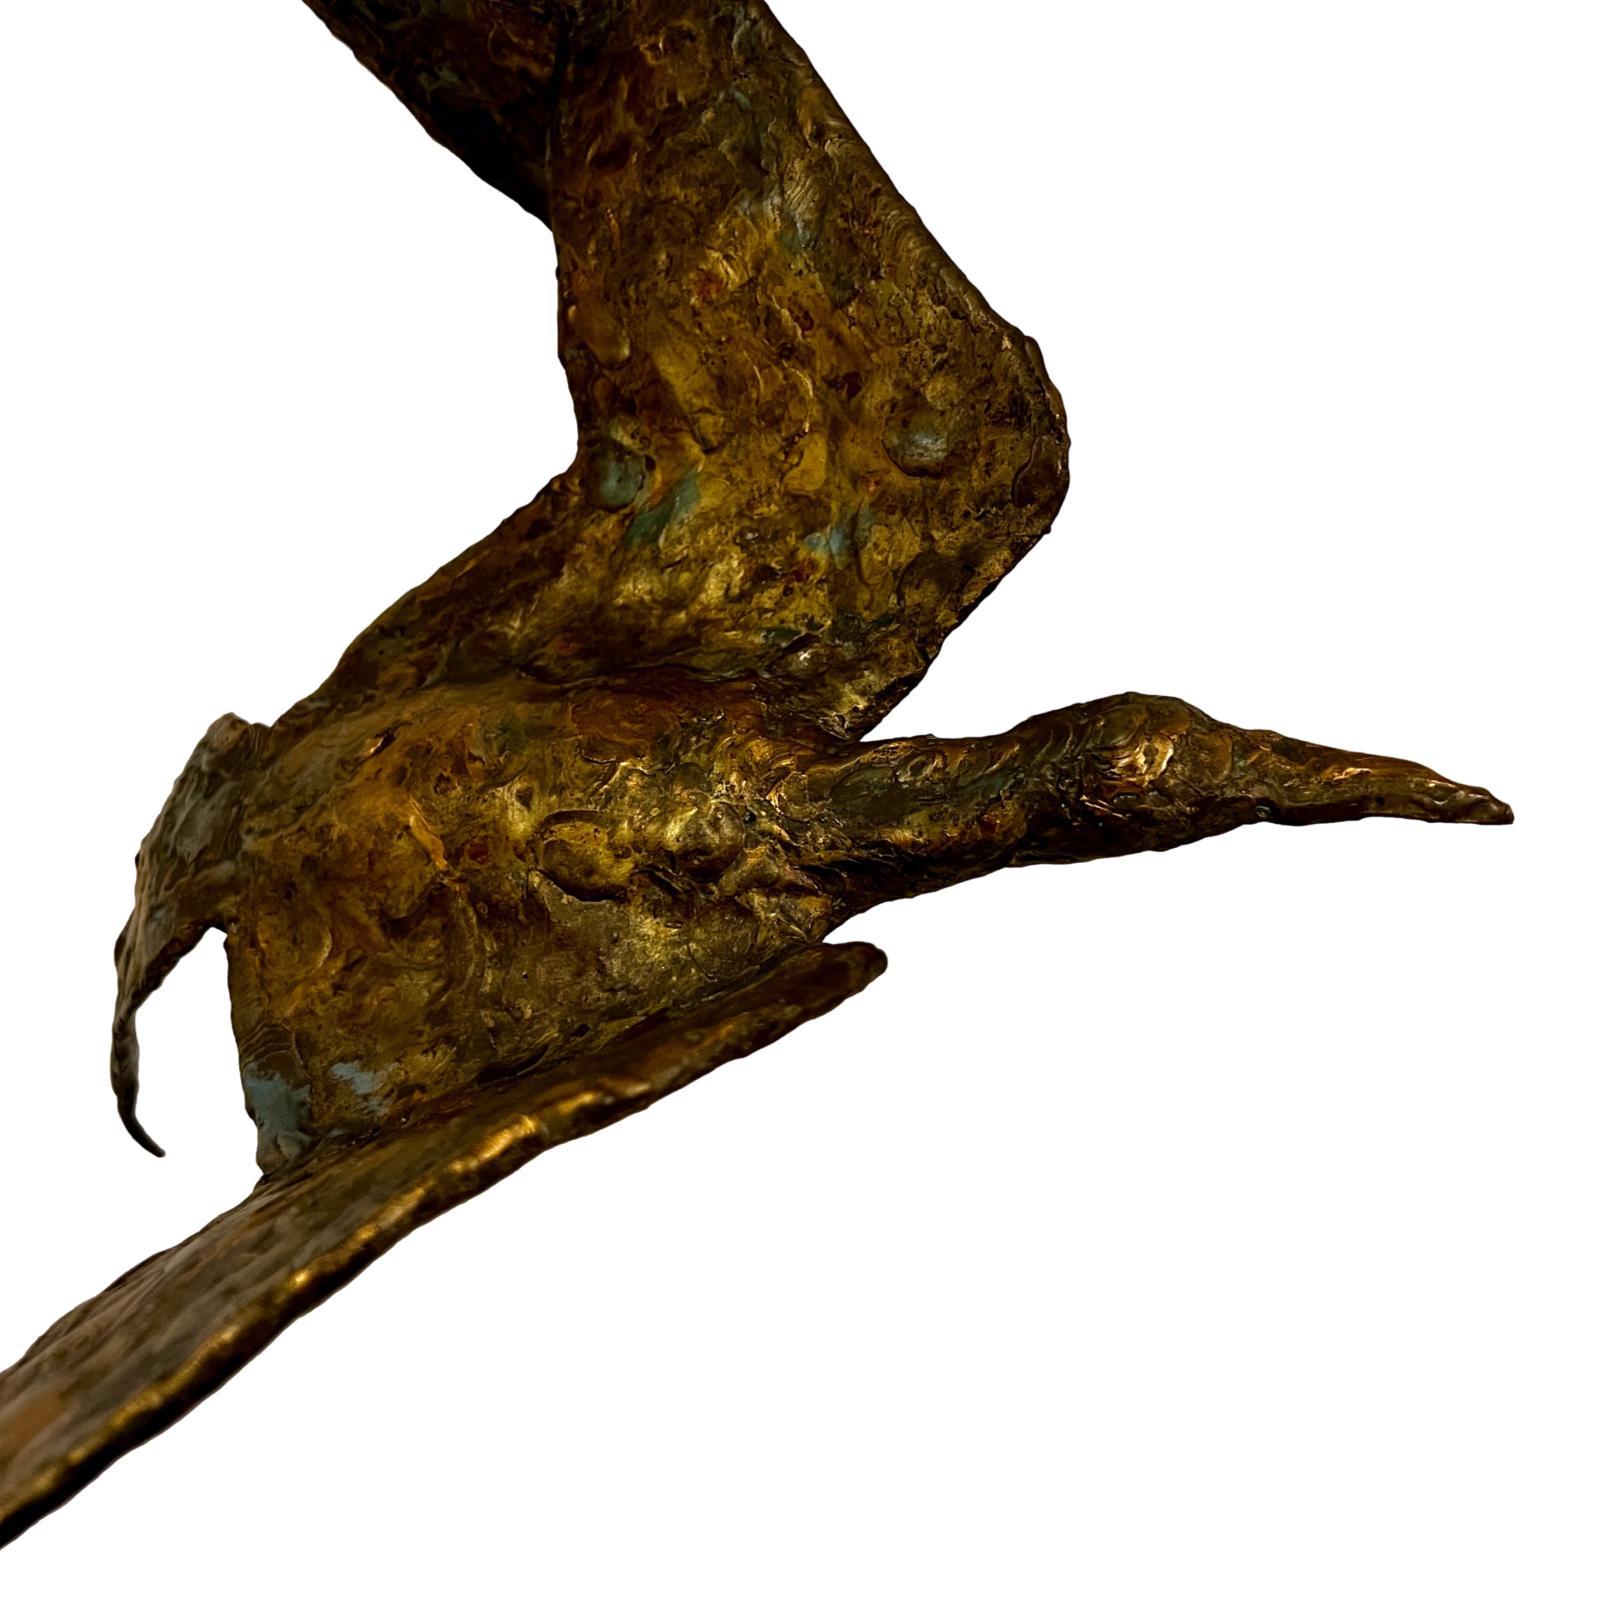 Sculpture italienne en fer martelé et doré, datant des années 1960, représentant trois oiseaux en vol.

Mesures :
Hauteur : 28